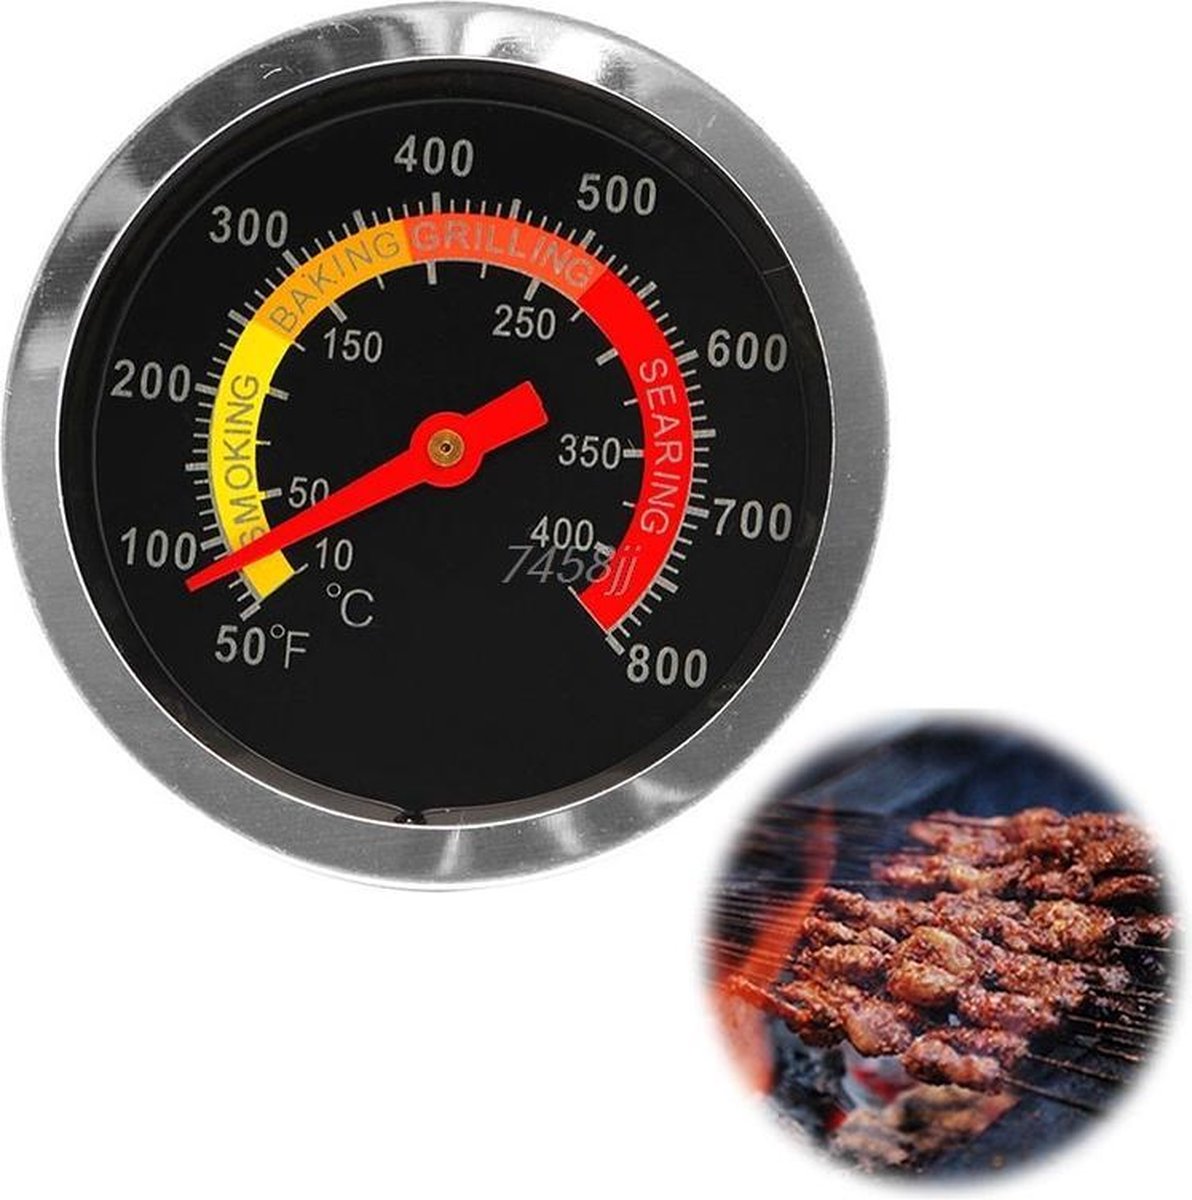 60 ℃ à 430 ℃ Thermomètre de barbecue dinstallation facile Jauge de température de fumeur en acier inoxydable Durable pour gril